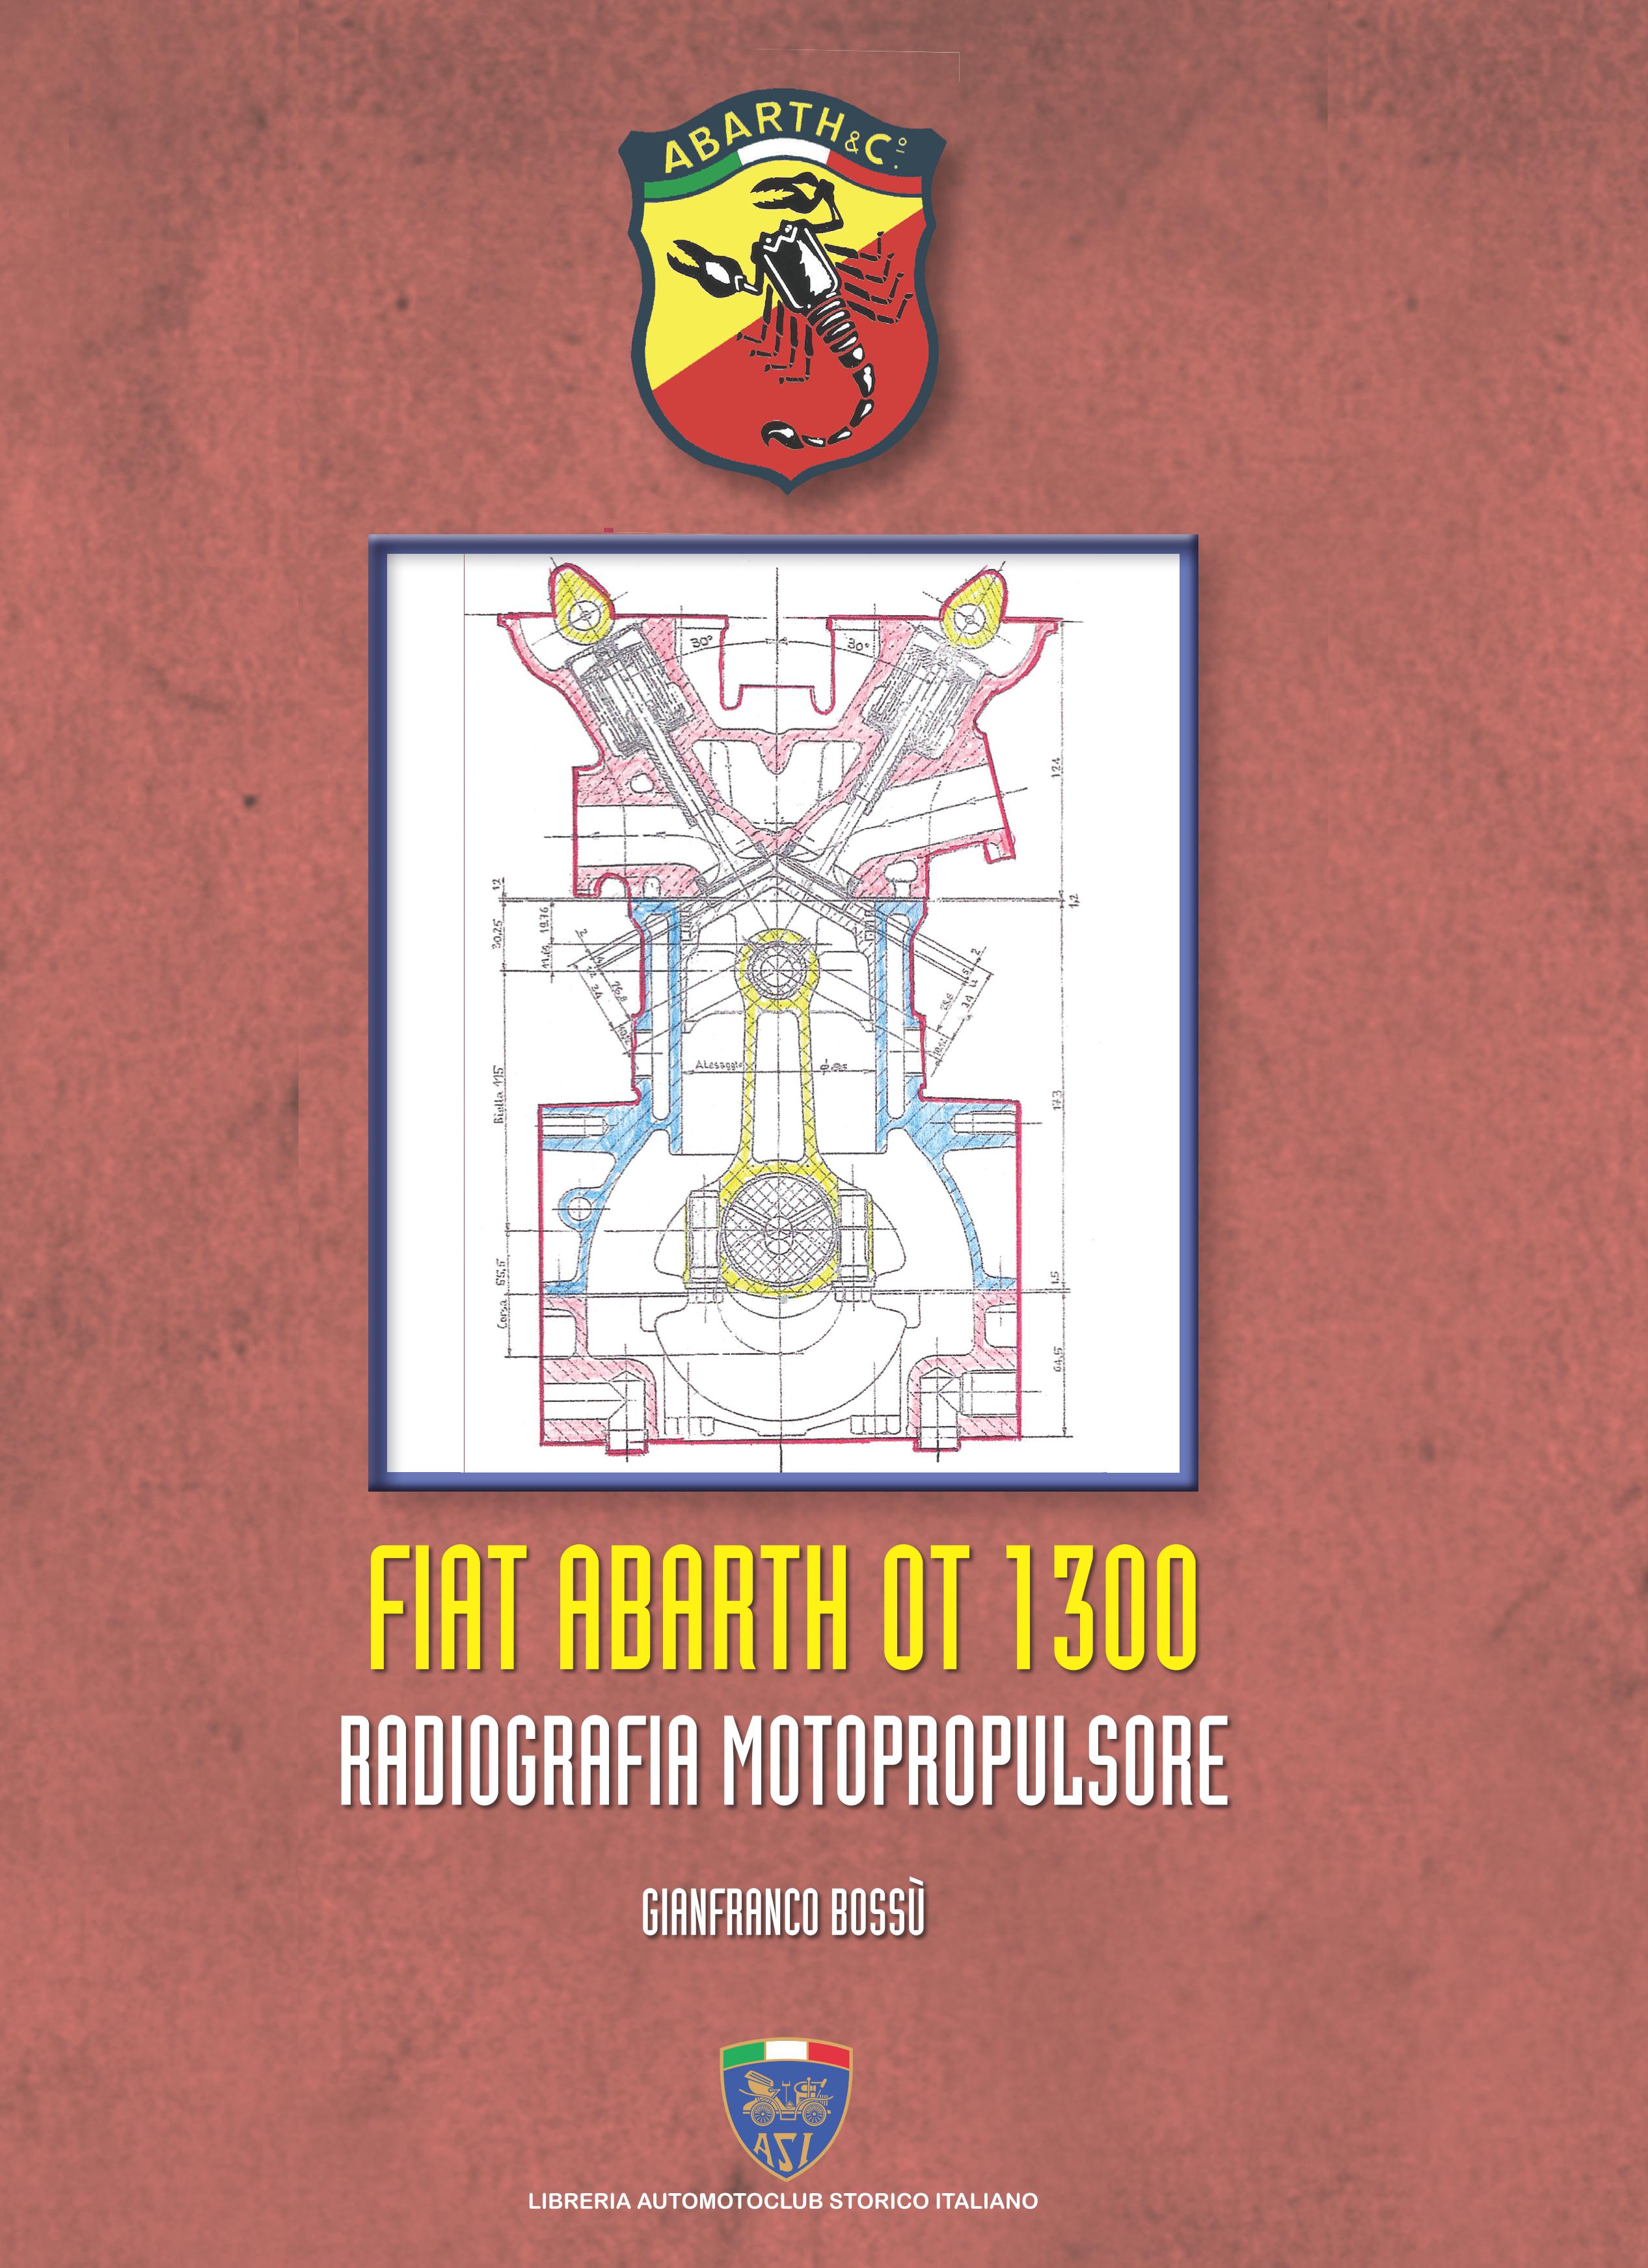 Libri Gianfranco Bossù - Fiat Abarth OT 1300. Radiografia Motopropulsore NUOVO SIGILLATO, EDIZIONE DEL 10/10/2022 SUBITO DISPONIBILE